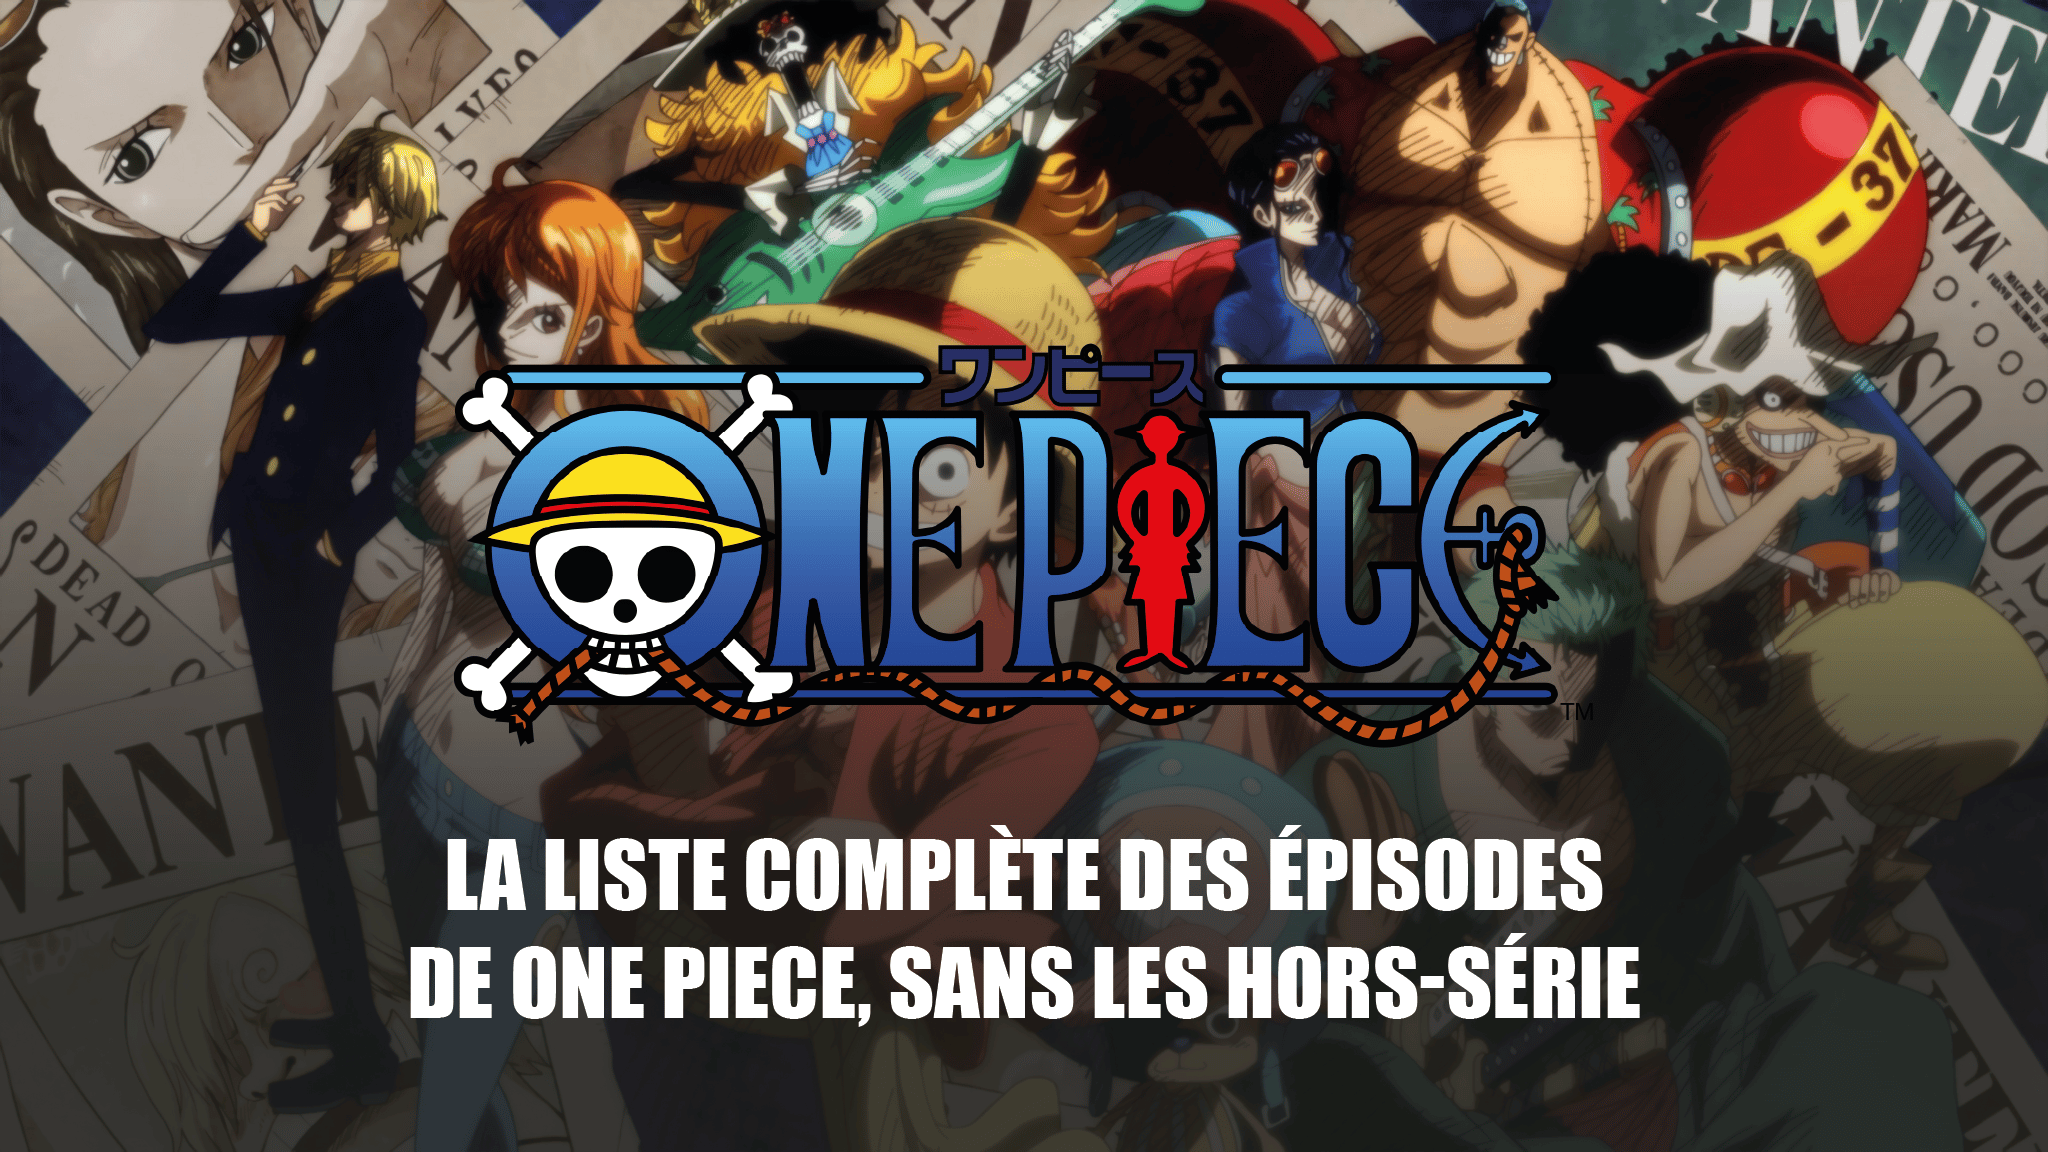 Liste complète des épisodes de lanime One Piece, sans hors-série et fillers